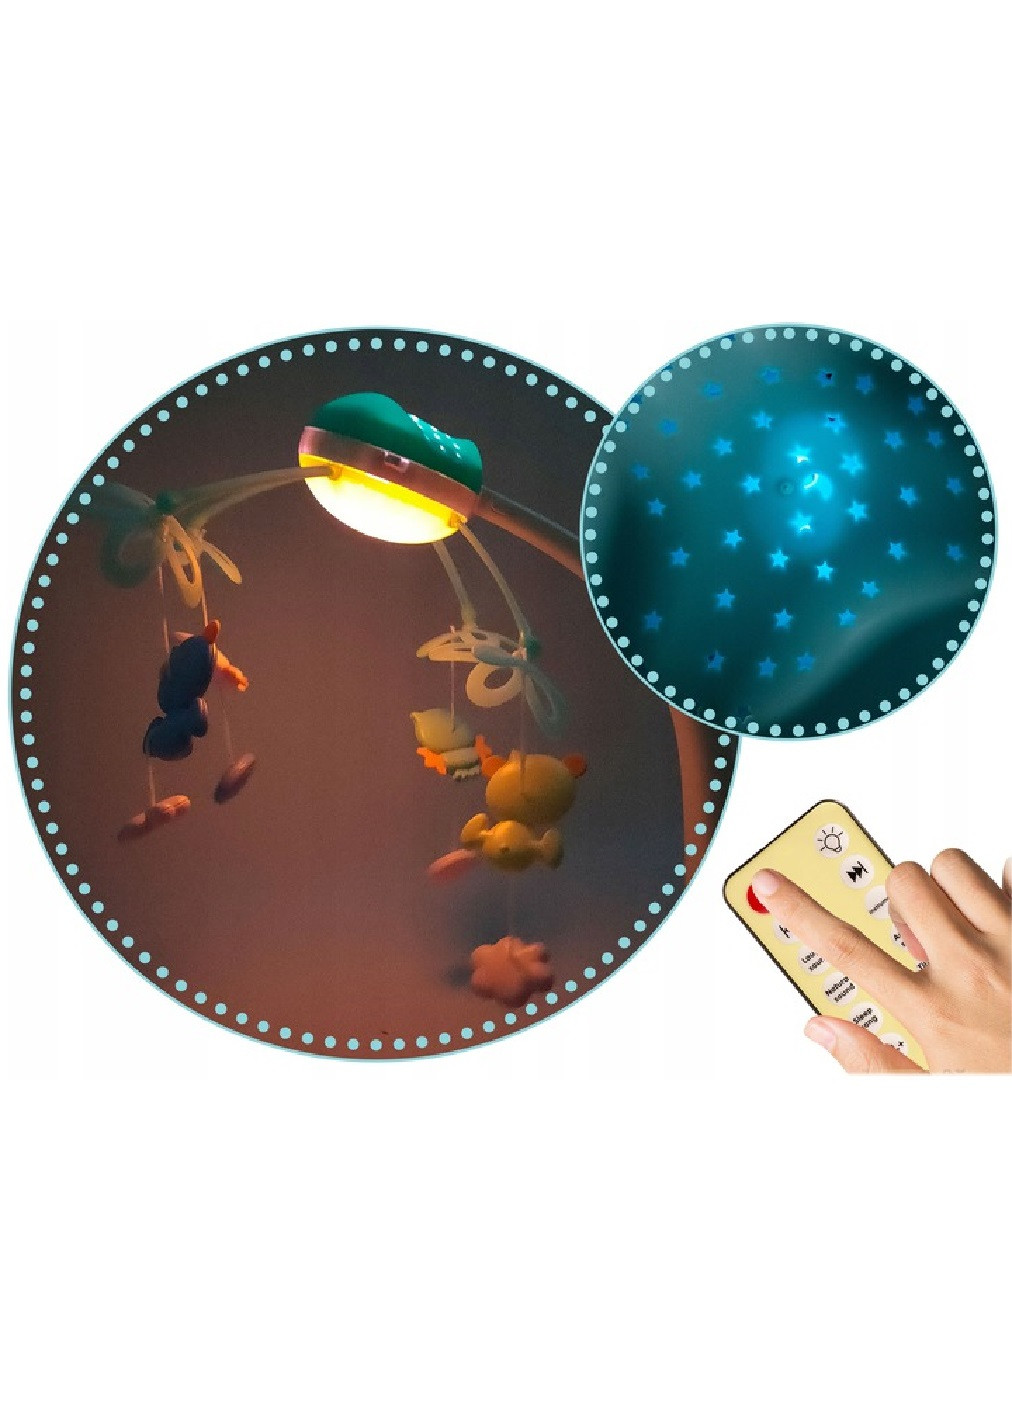 Мобиль на кроватку с игрушками проектором мелодиями дистанционным управлением для детей малышей (475469-Prob) Голубой Unbranded (267890422)